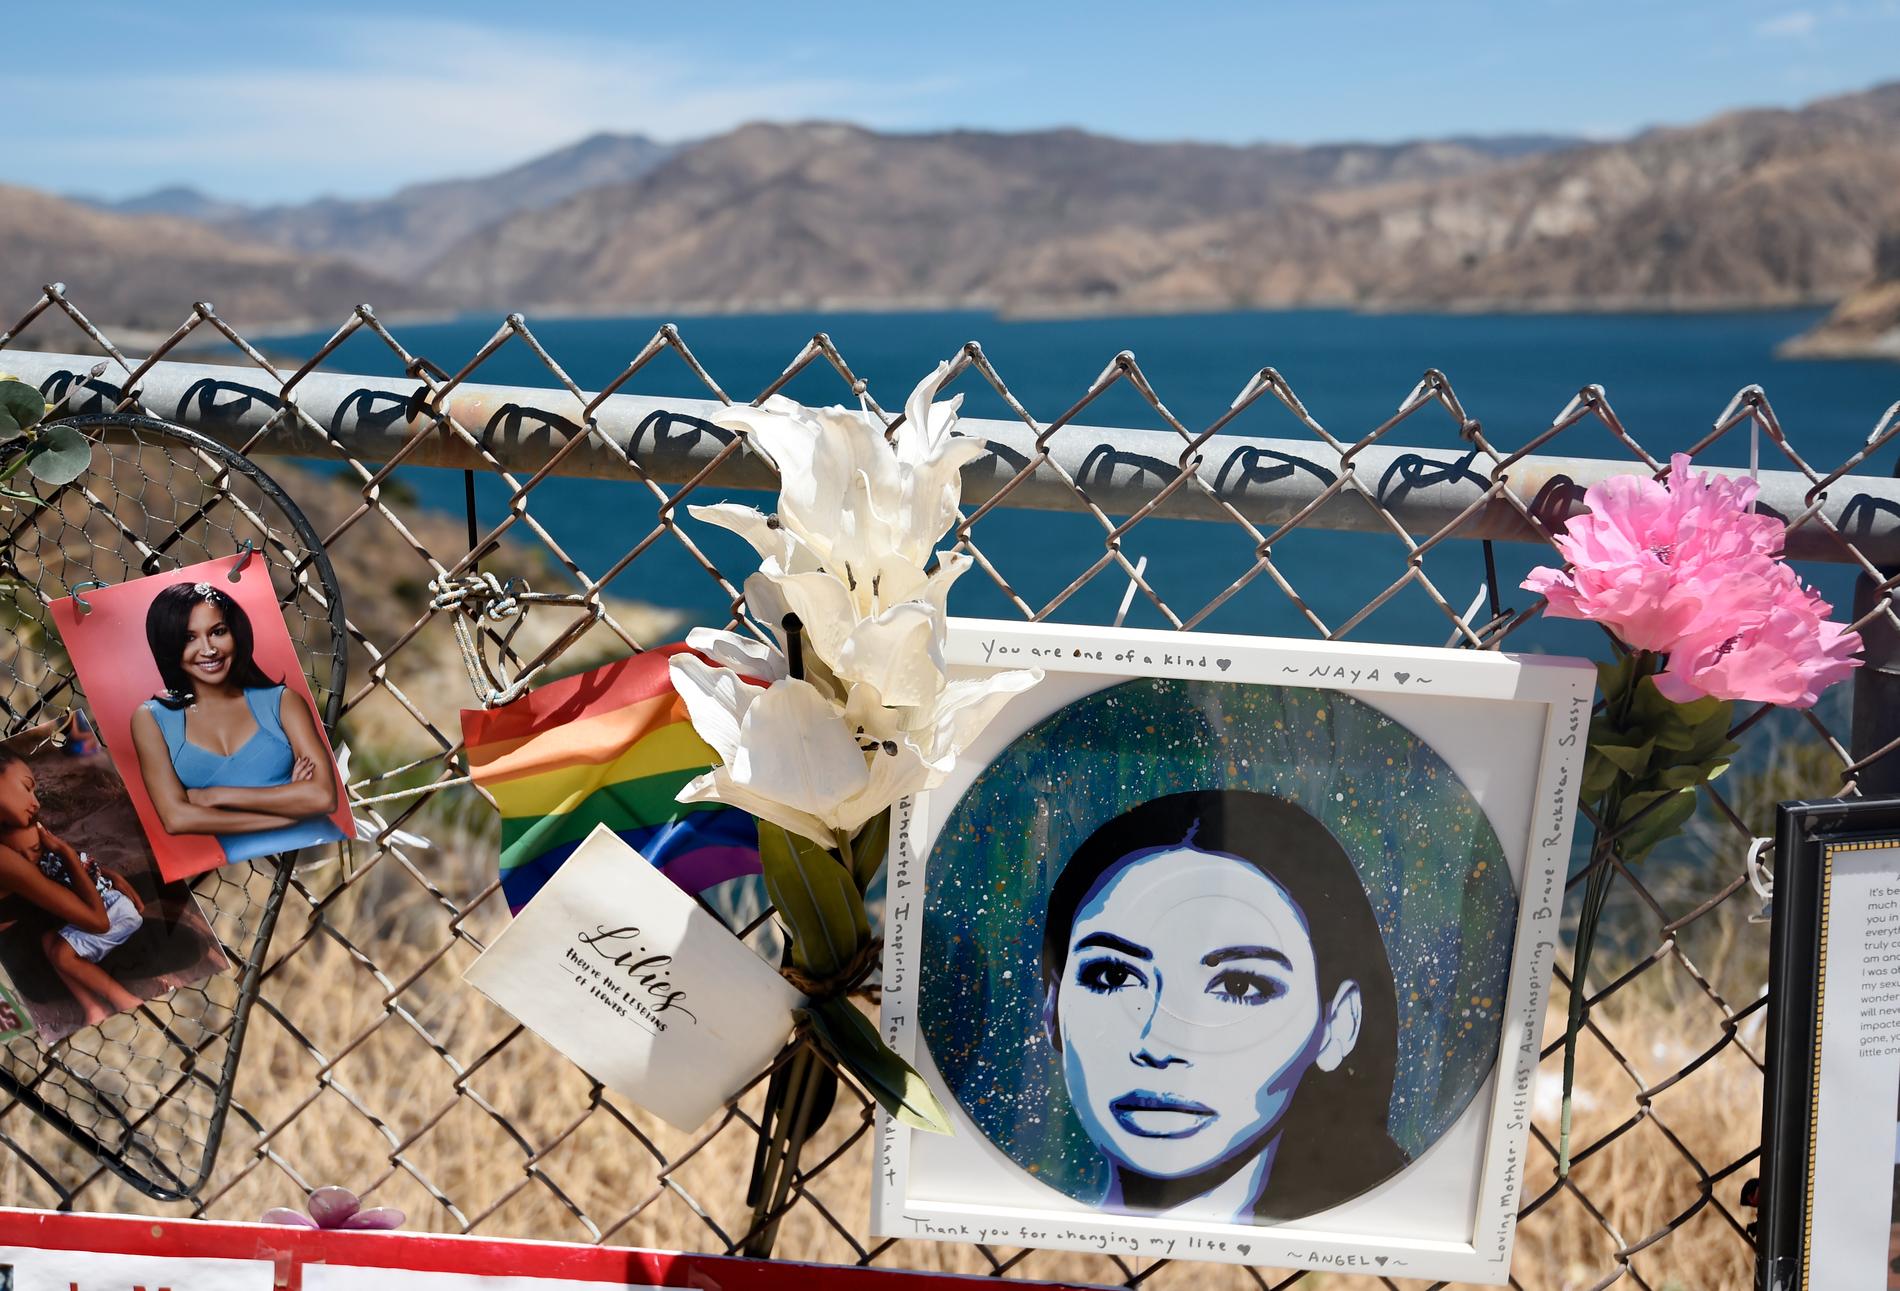 Naya Rivere dog till följd av en drunkningsolycka 2020. Det skapades då en minnesplats vid sjön Lake Piru i Kalifornien, där hon hittades död.  